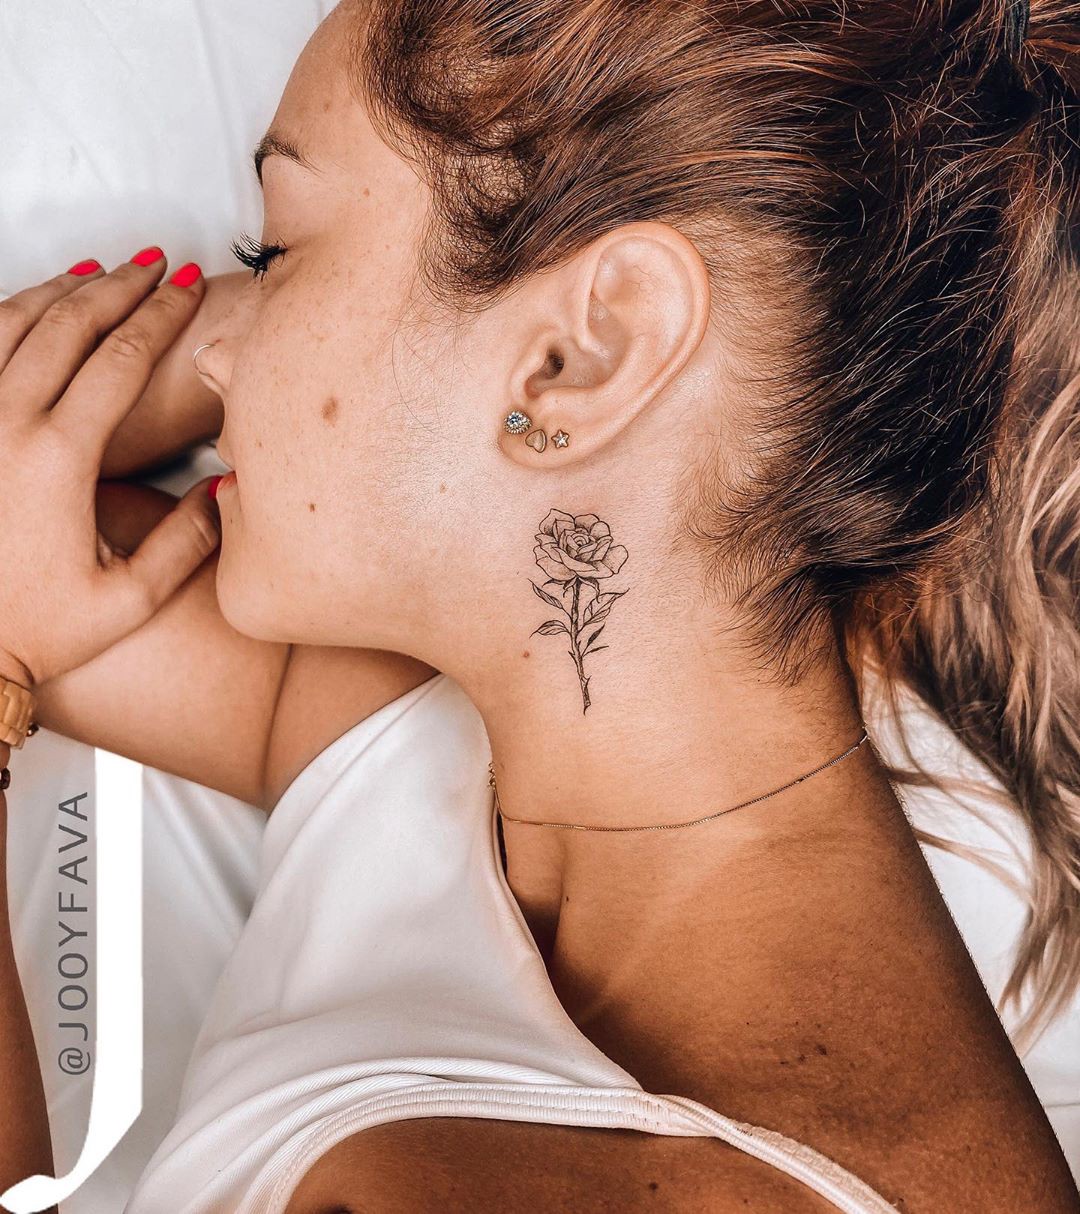 tattoo na mao delicada feminina 2023